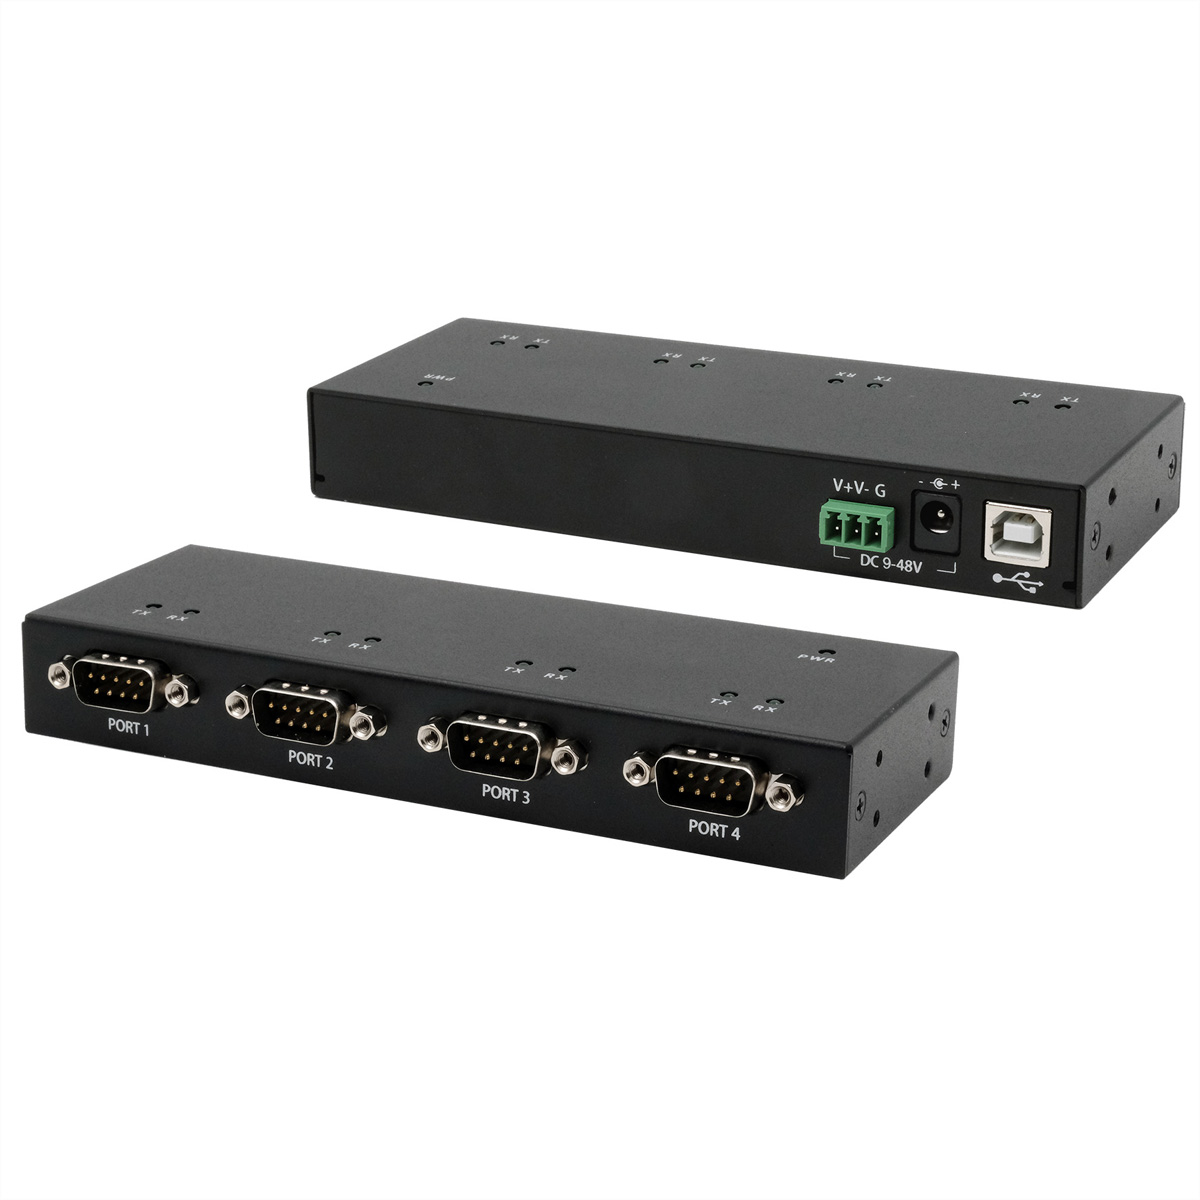 EXSYS EX-13074HM USB 2.0 zu 4 x Seriell RS-232 Ports Metallgehäuse FTDI Chip-Set